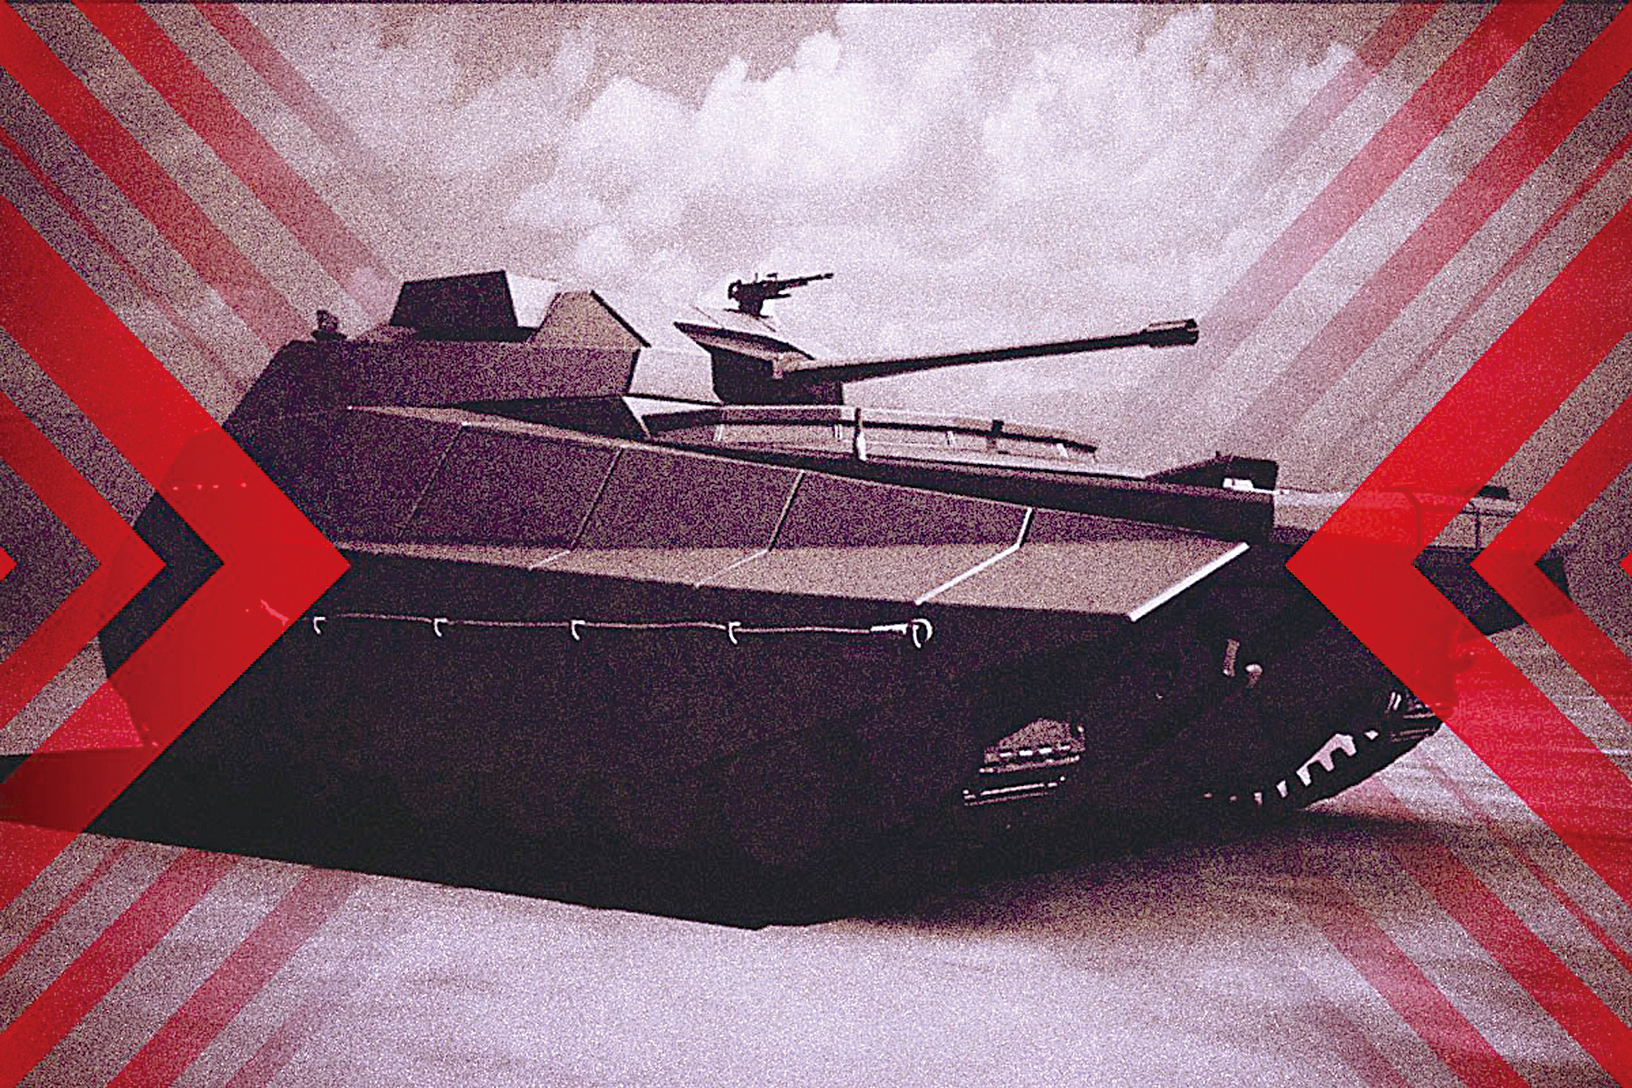 卡梅爾計劃的目標是極大地改善以色列國防軍裝甲部隊的機動能力。而作為重型裝甲世界中標誌性的坦克，梅卡瓦也是經過戰鬥考驗的贏家。（大紀元製圖）